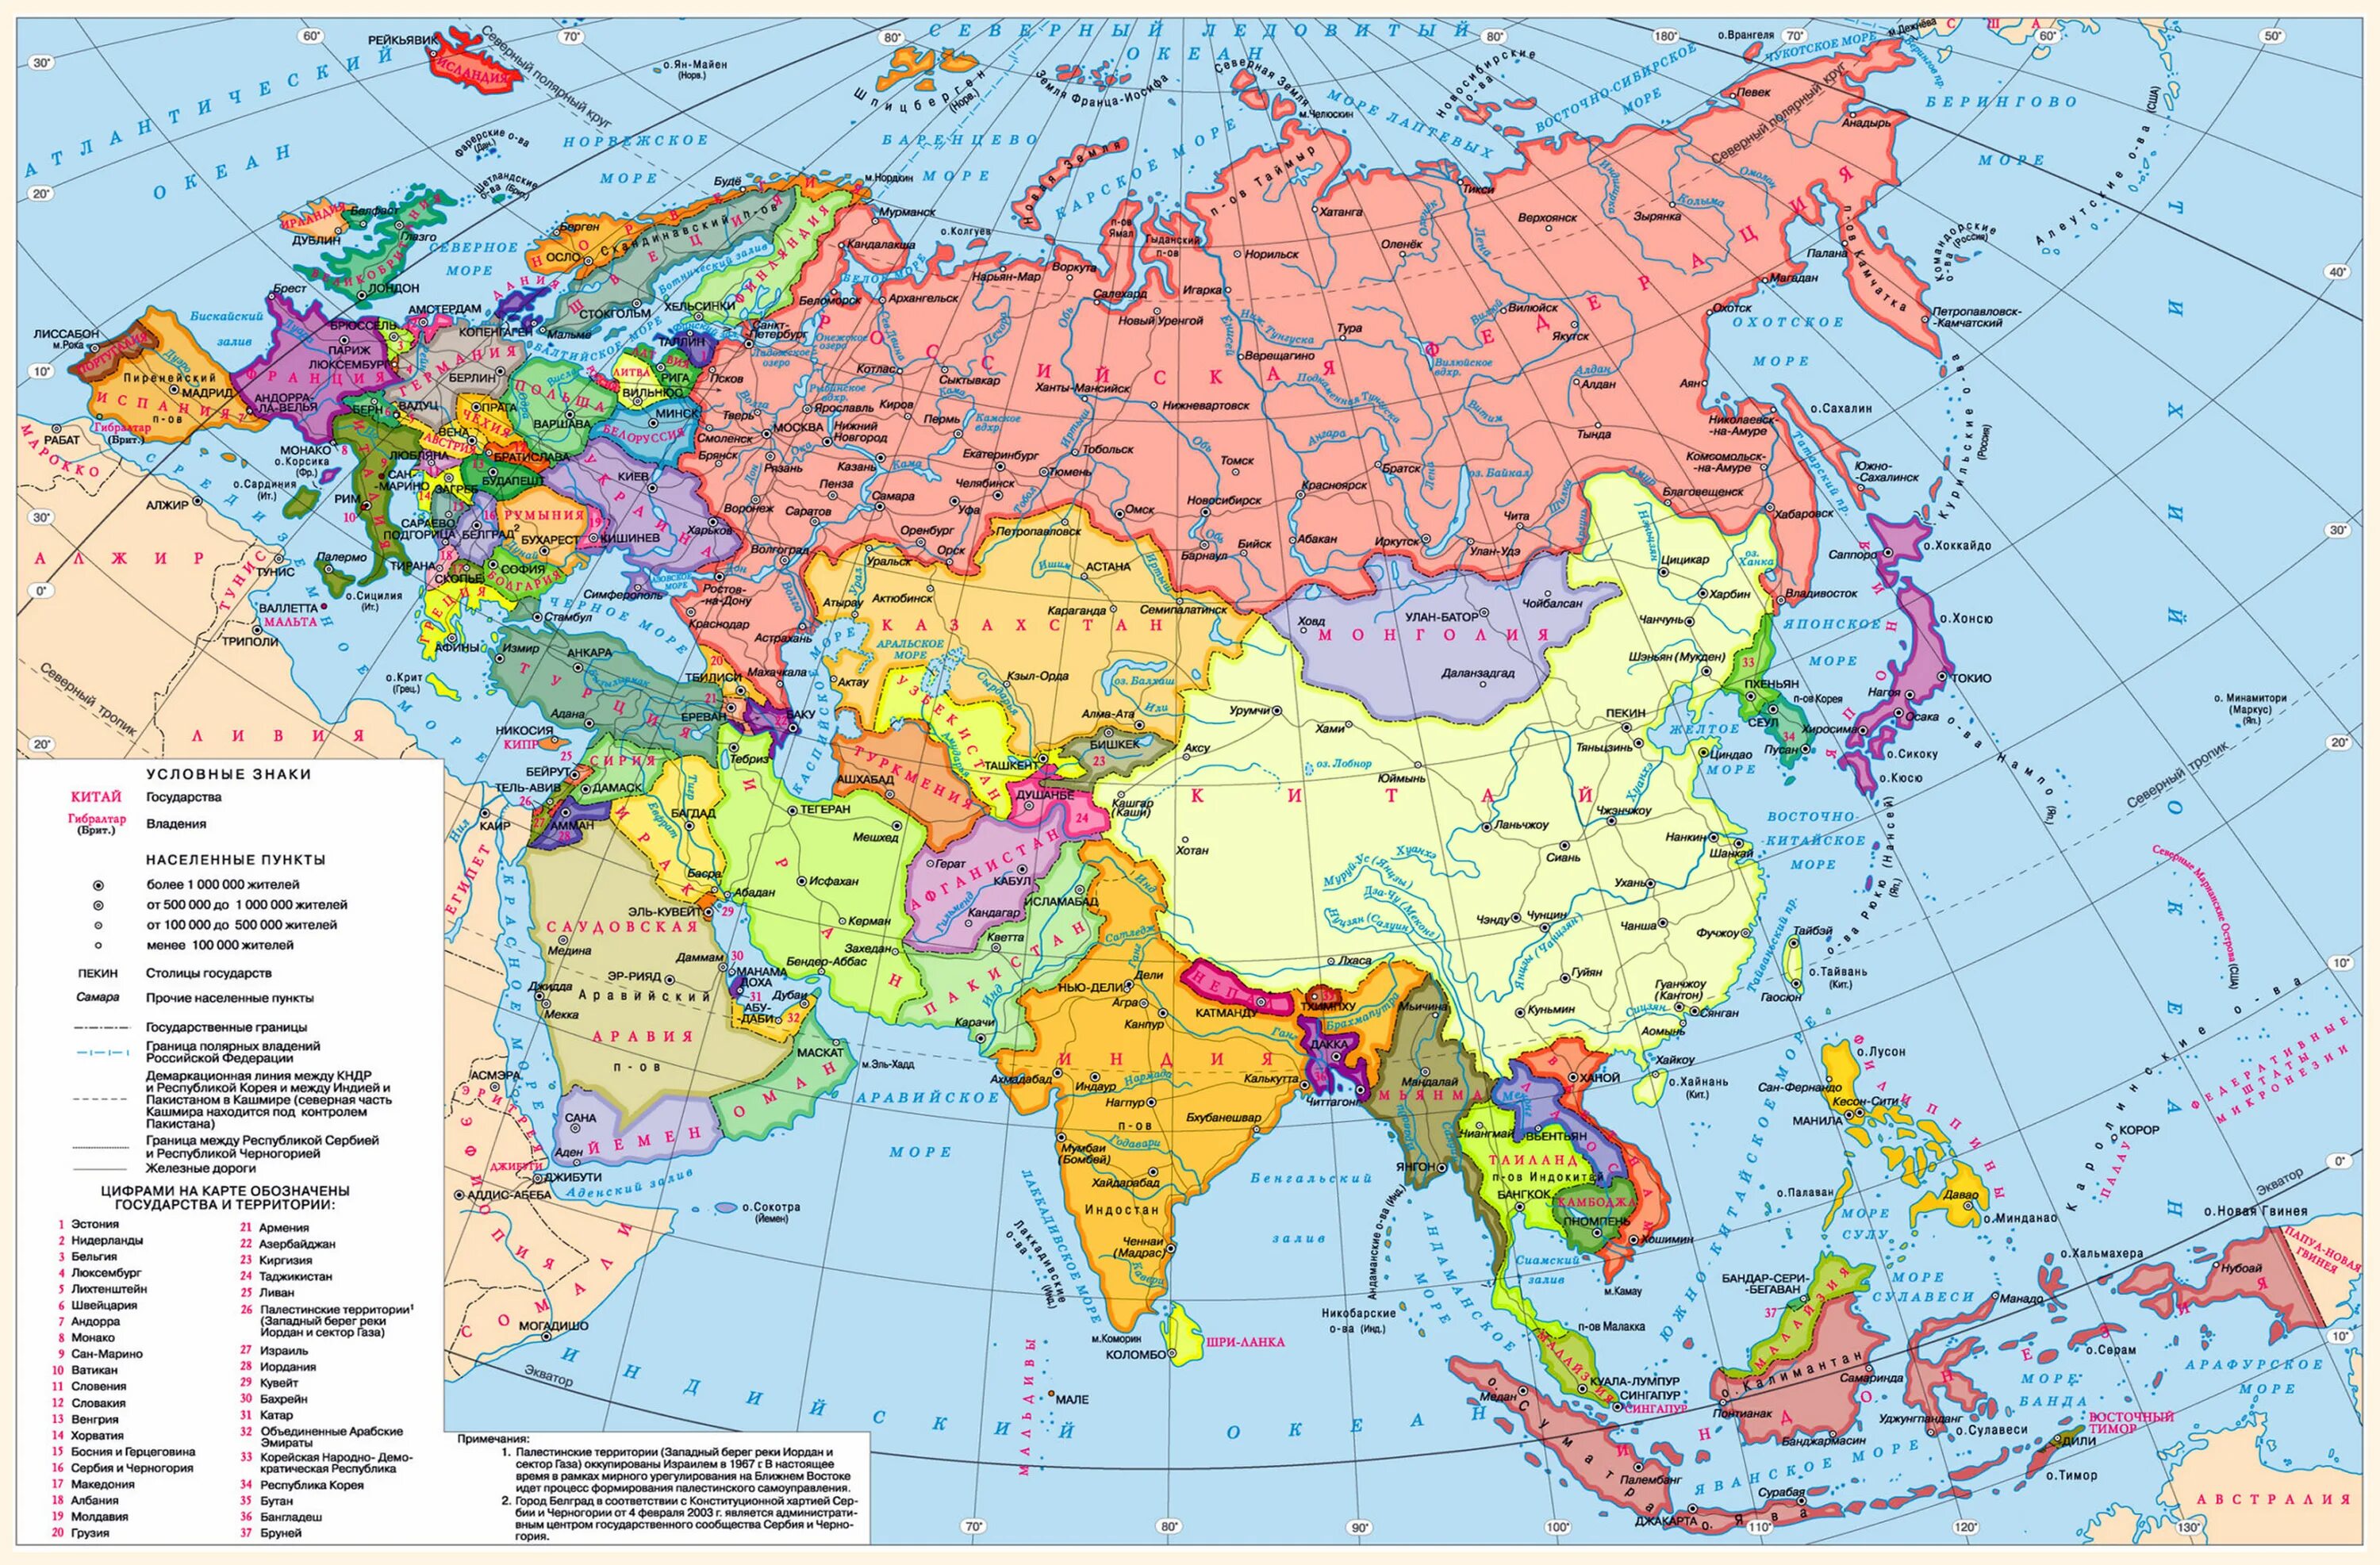 Самые крупные страны евразии по площади. Географическая карта Евразии со странами. Карта зарубежной Азии со странами и столицами. Политическая карта Евразии со странами крупно на русском. Карта Евразии со странами крупно на русском.